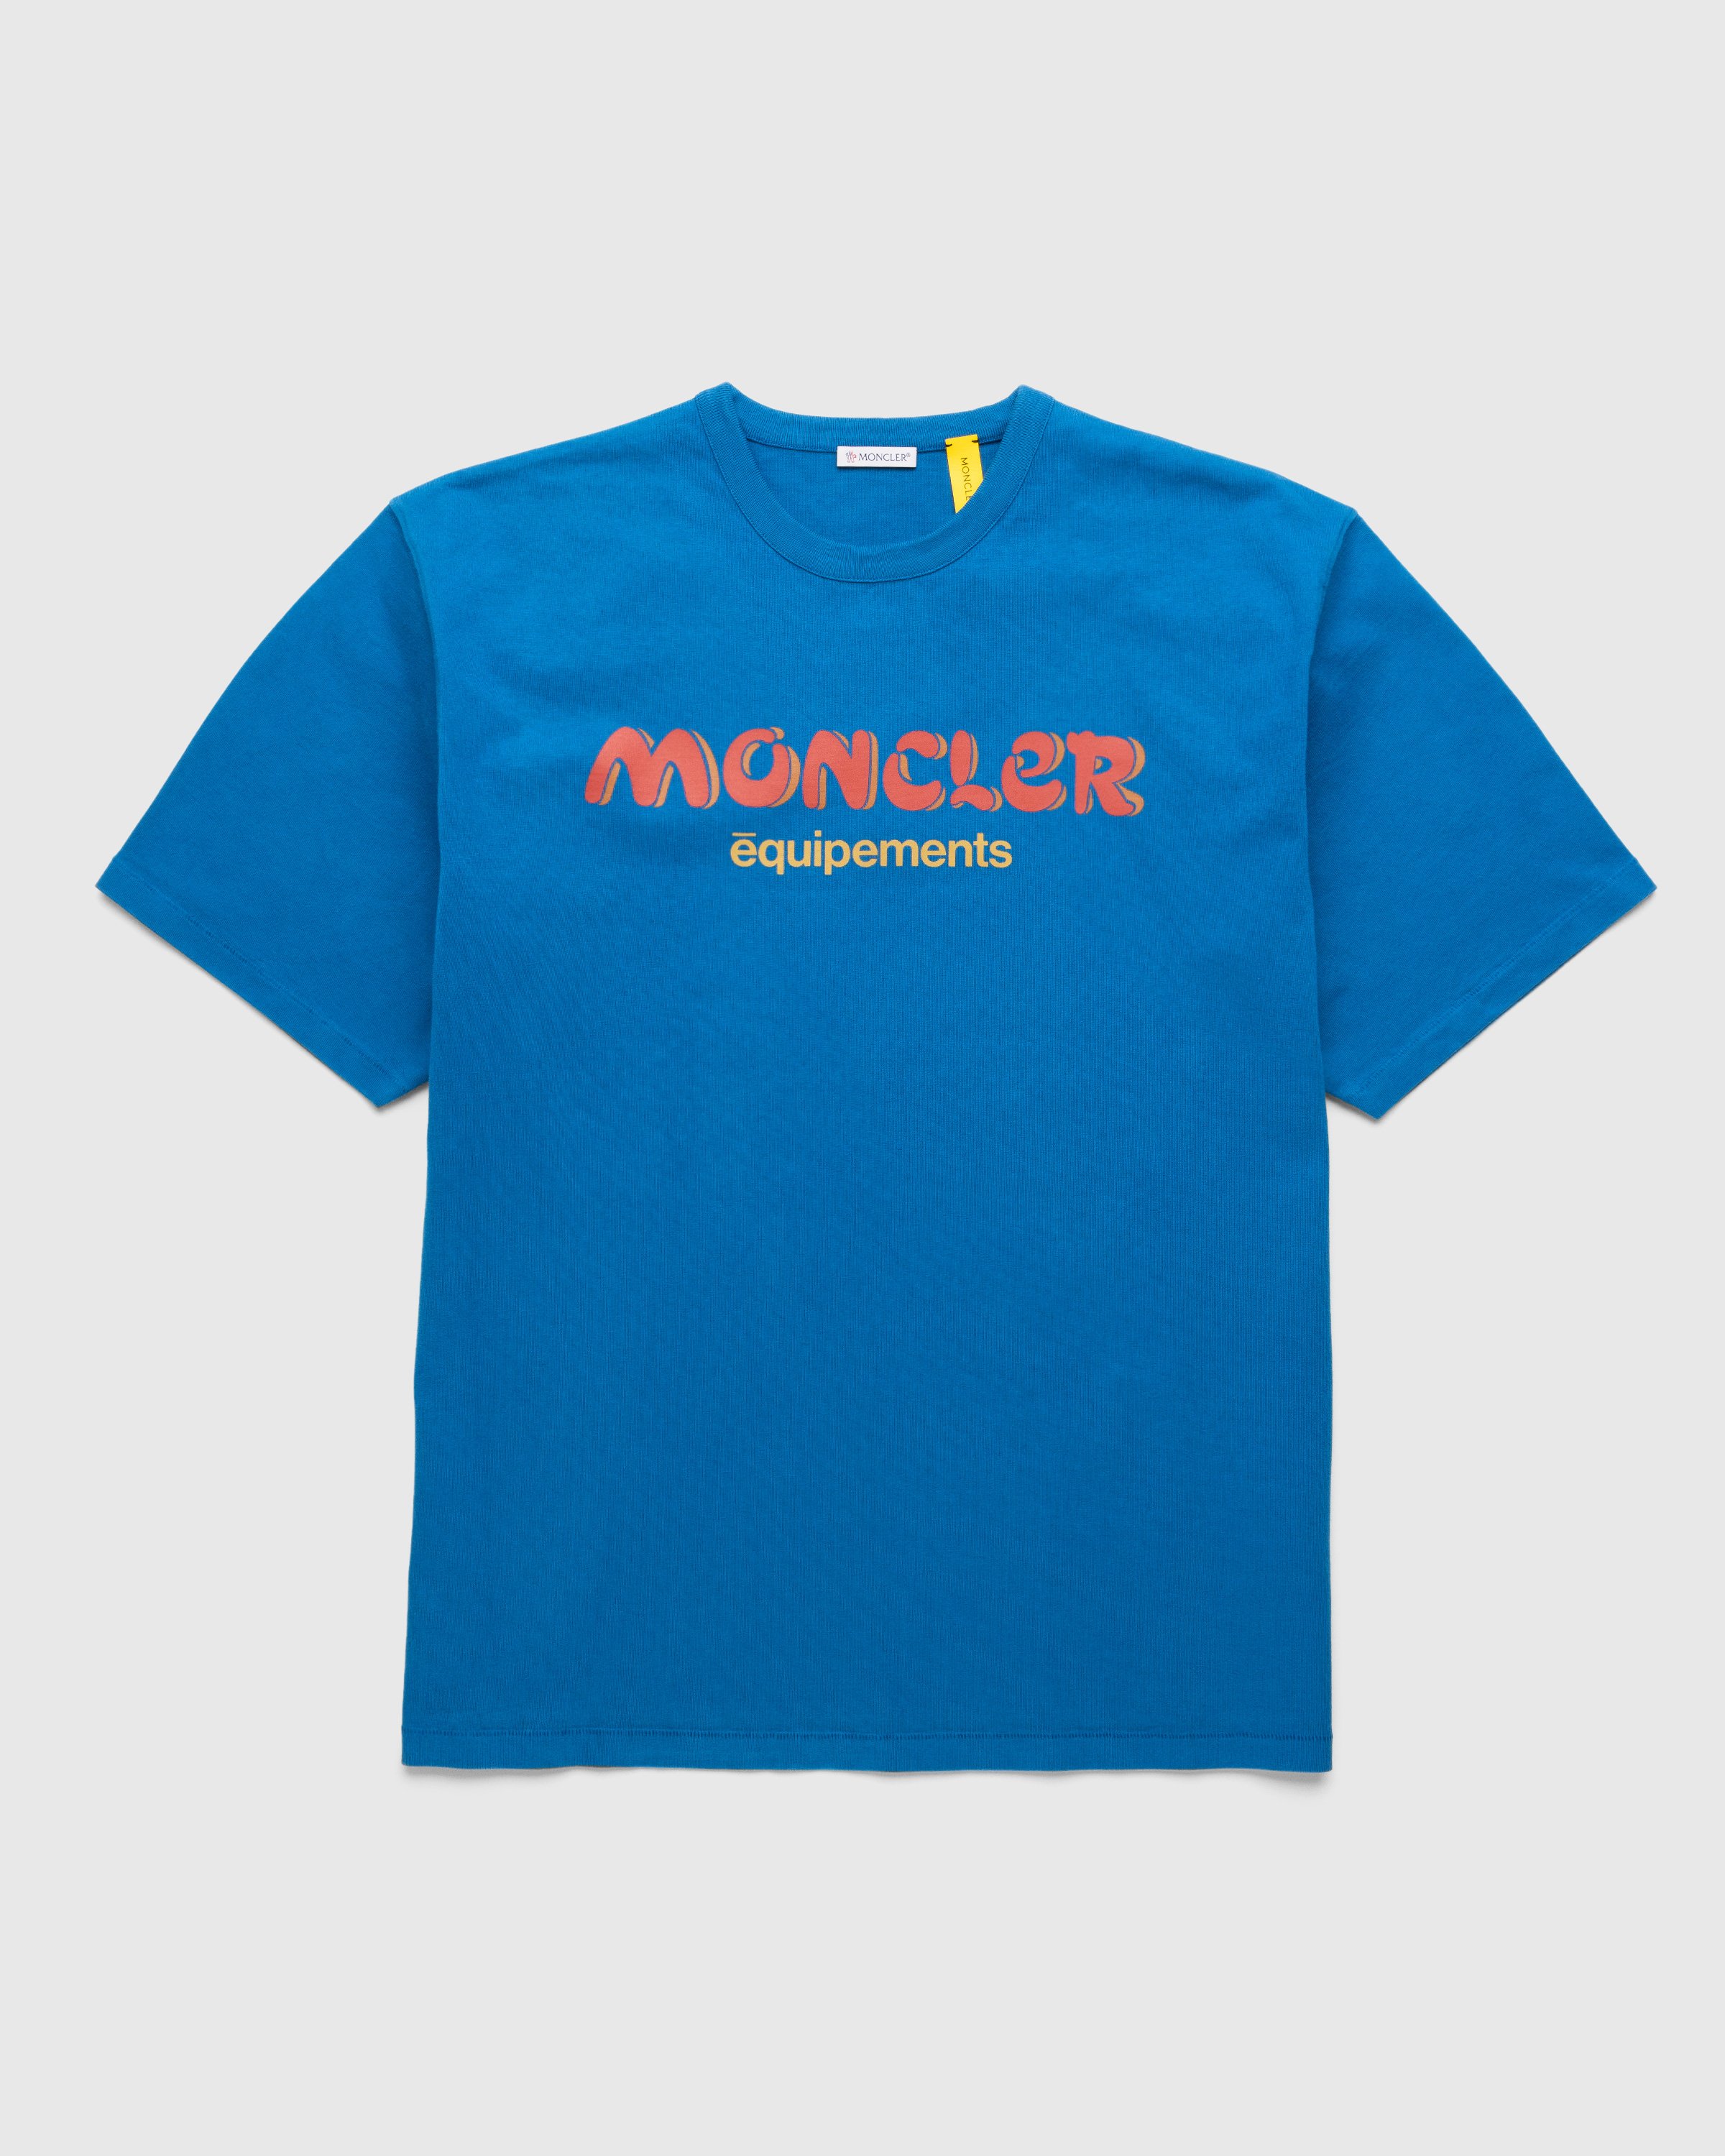 Moncler x Salehe Bembury - Logo T-Shirt Blue - Clothing - Blue - Image 1